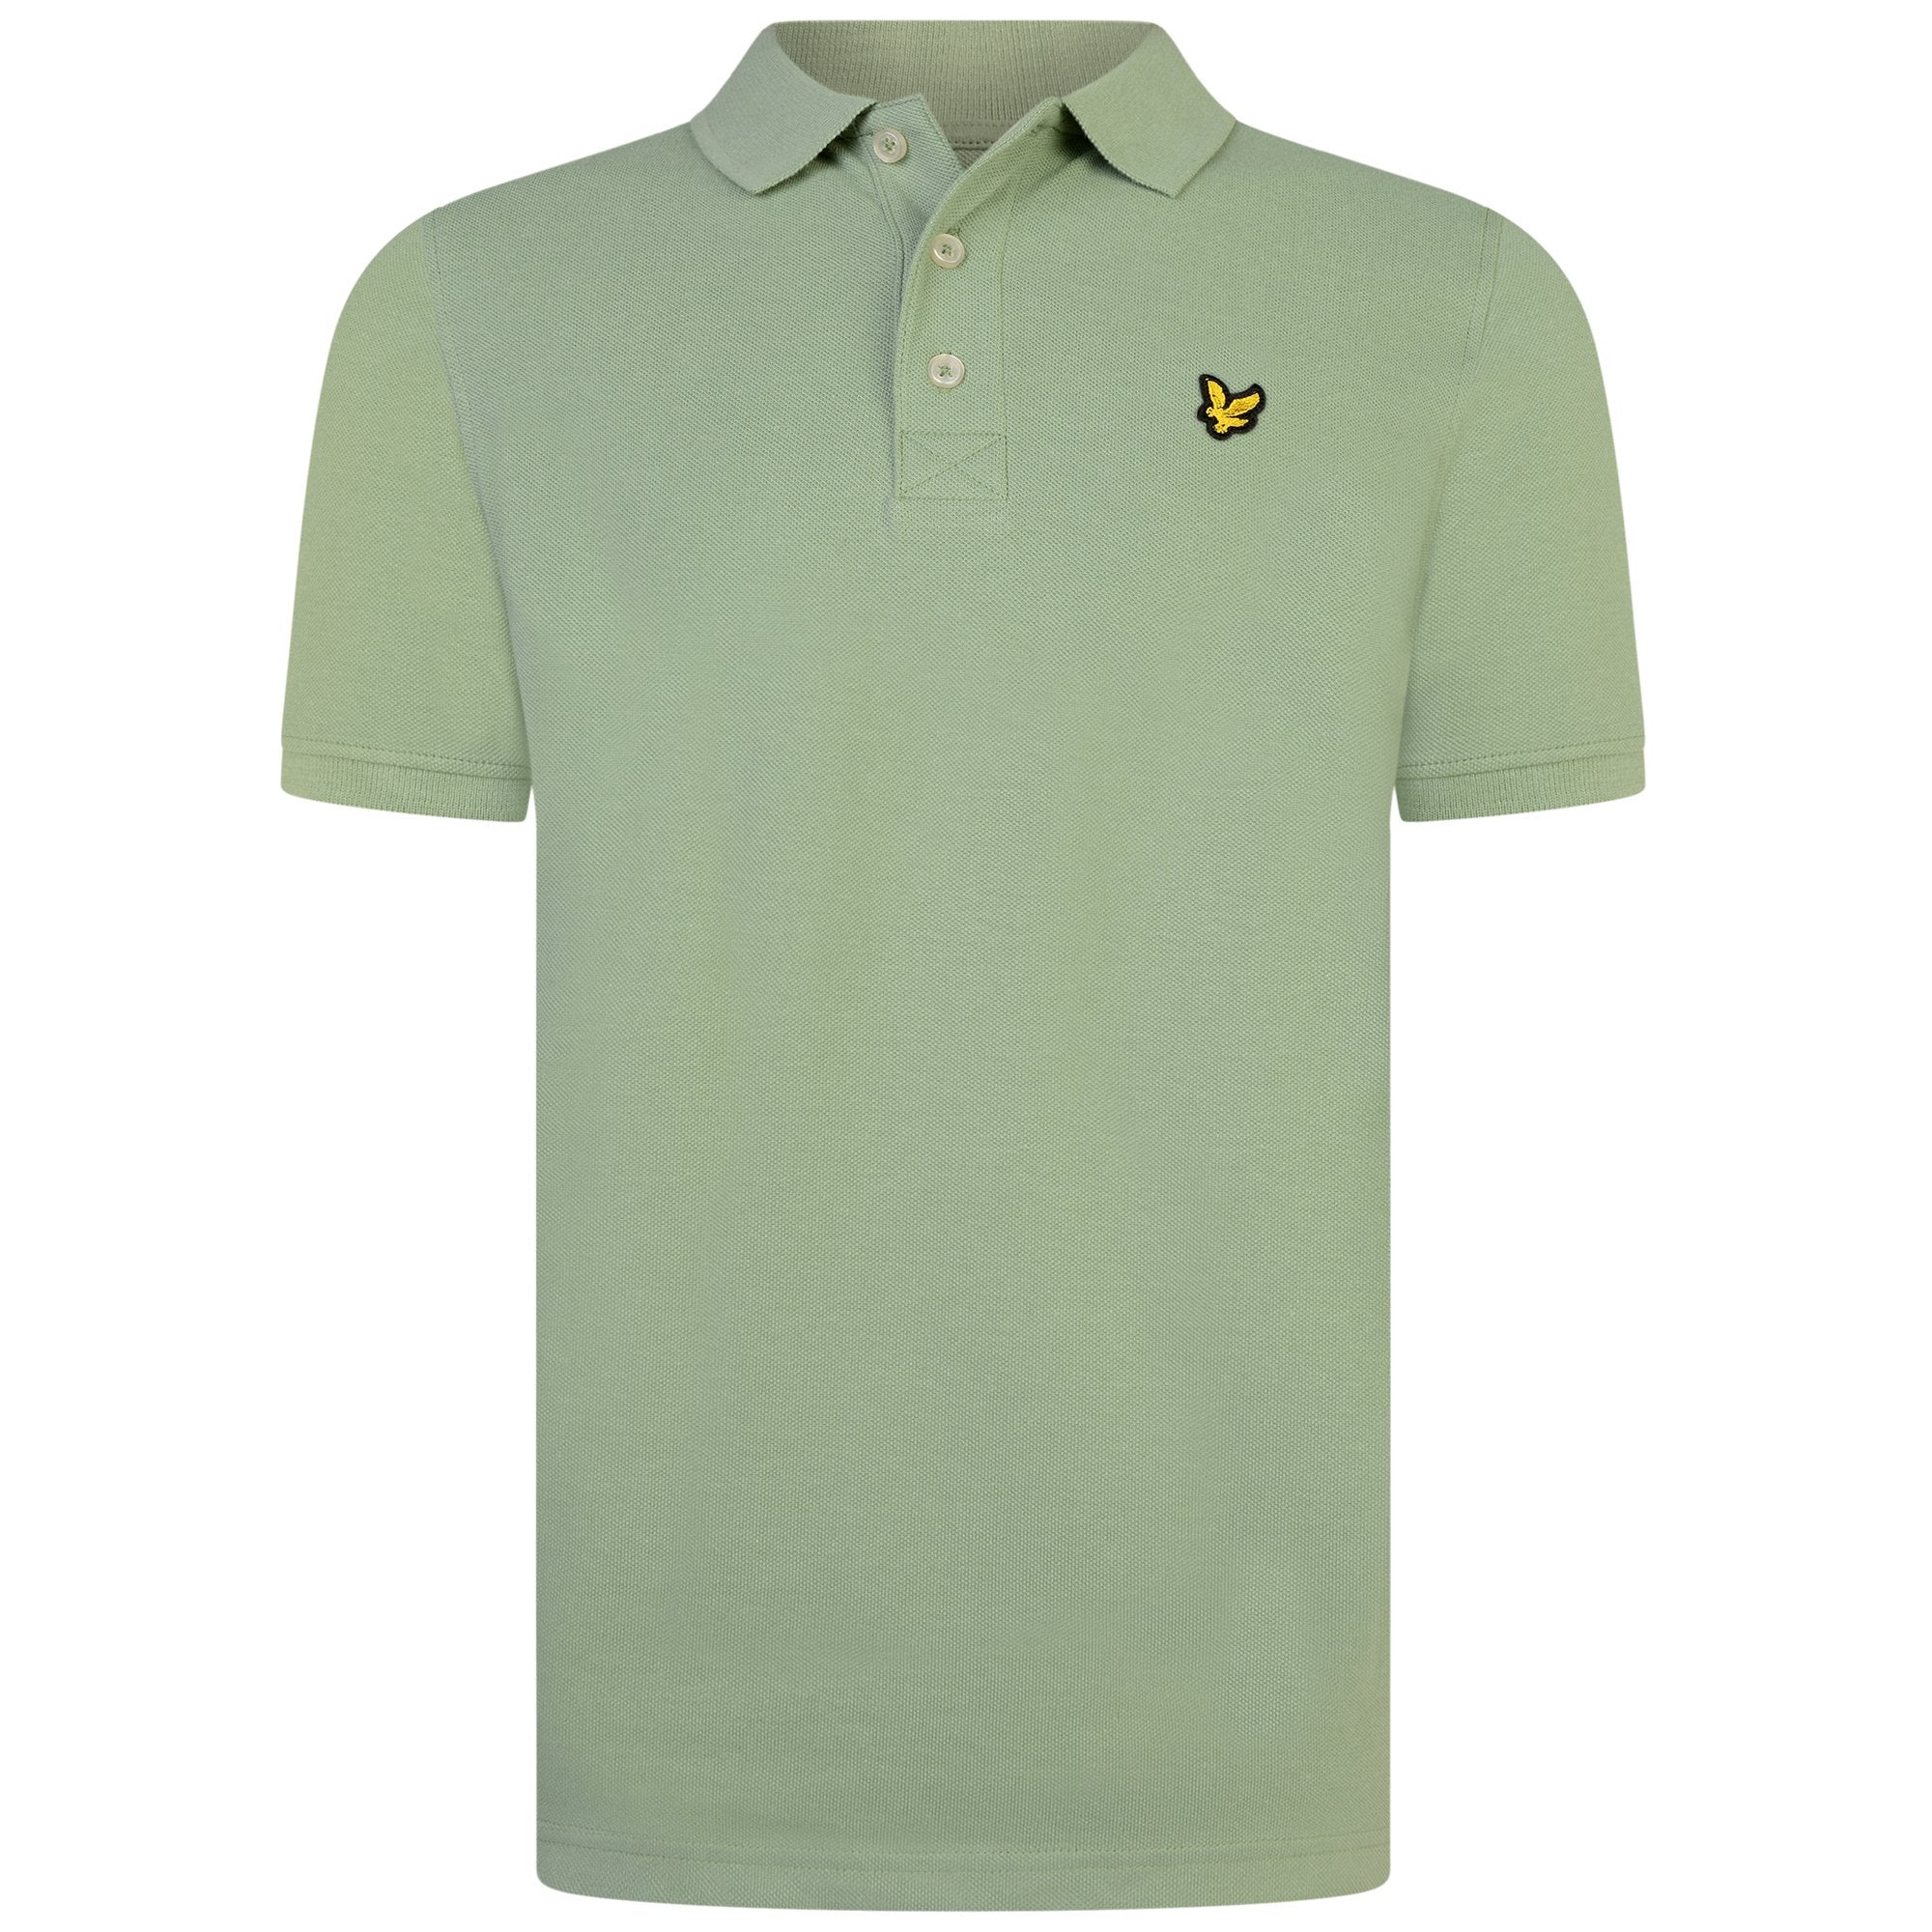 Jongens Classic Polo Shirt Hedge Green van Lyle & Scott in de kleur Hedge Green in maat 170-176.